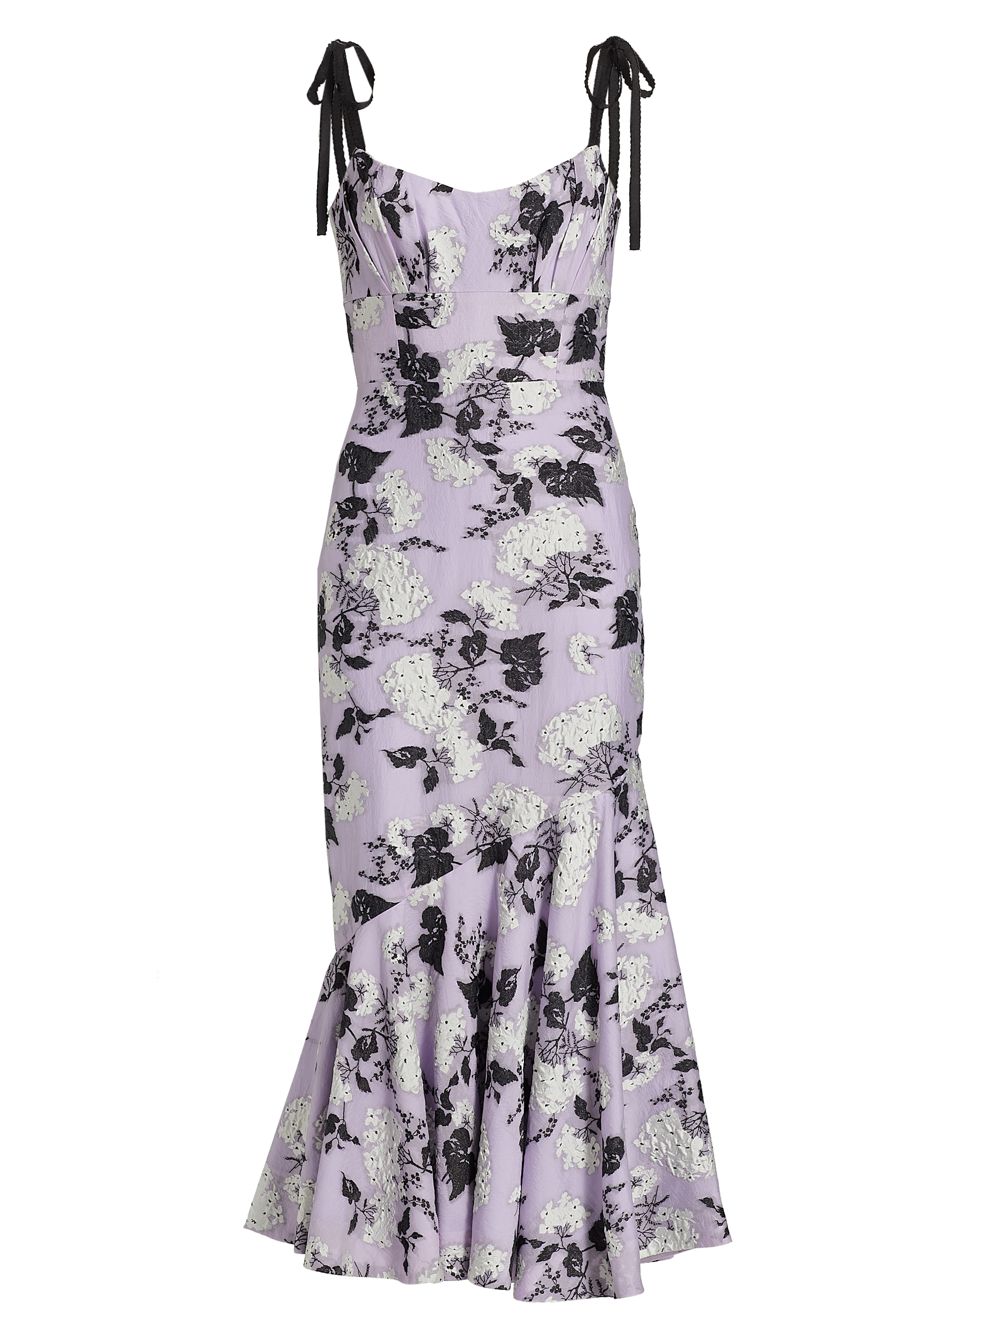 Жаккардовое платье миди с цветочным принтом ML Monique Lhuillier шифоновое платье макси melanie с цветочным принтом ml monique lhuillier цвет floral shadow